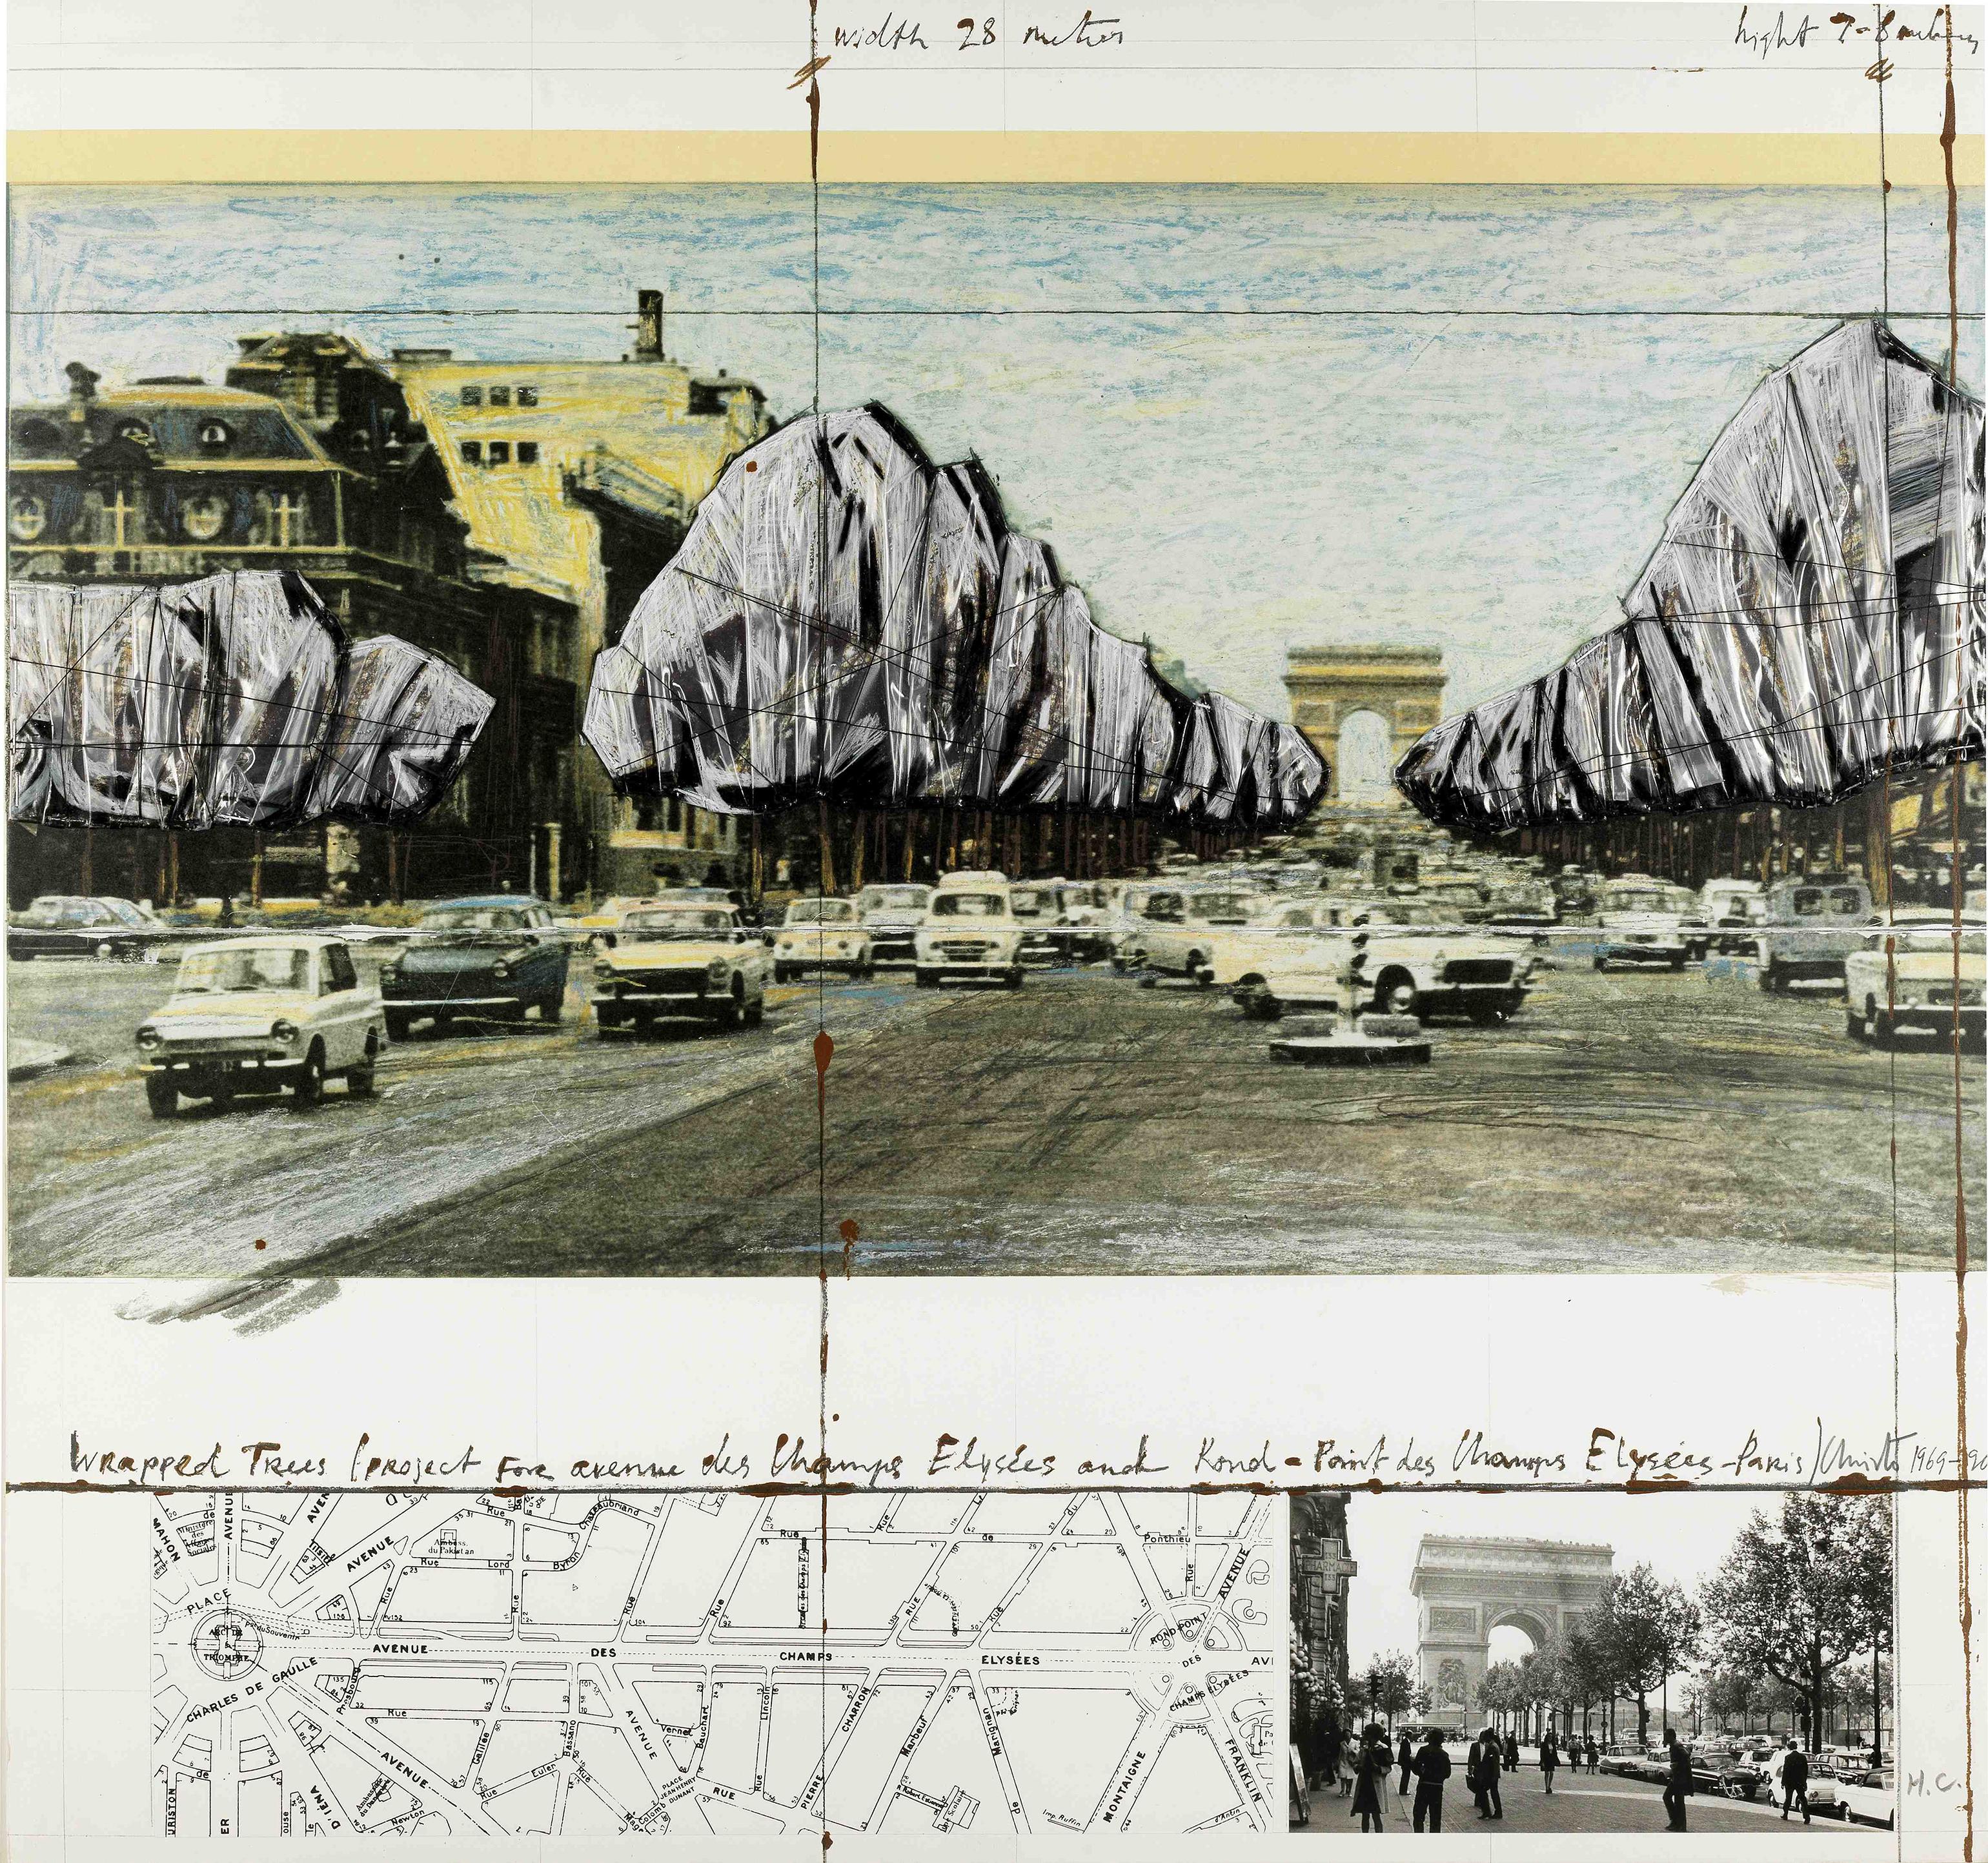 Christo and Jeanne-Claude Landscape Print - Wrapped Trees, Project for the Avenue des Champs-Elysées, Paris